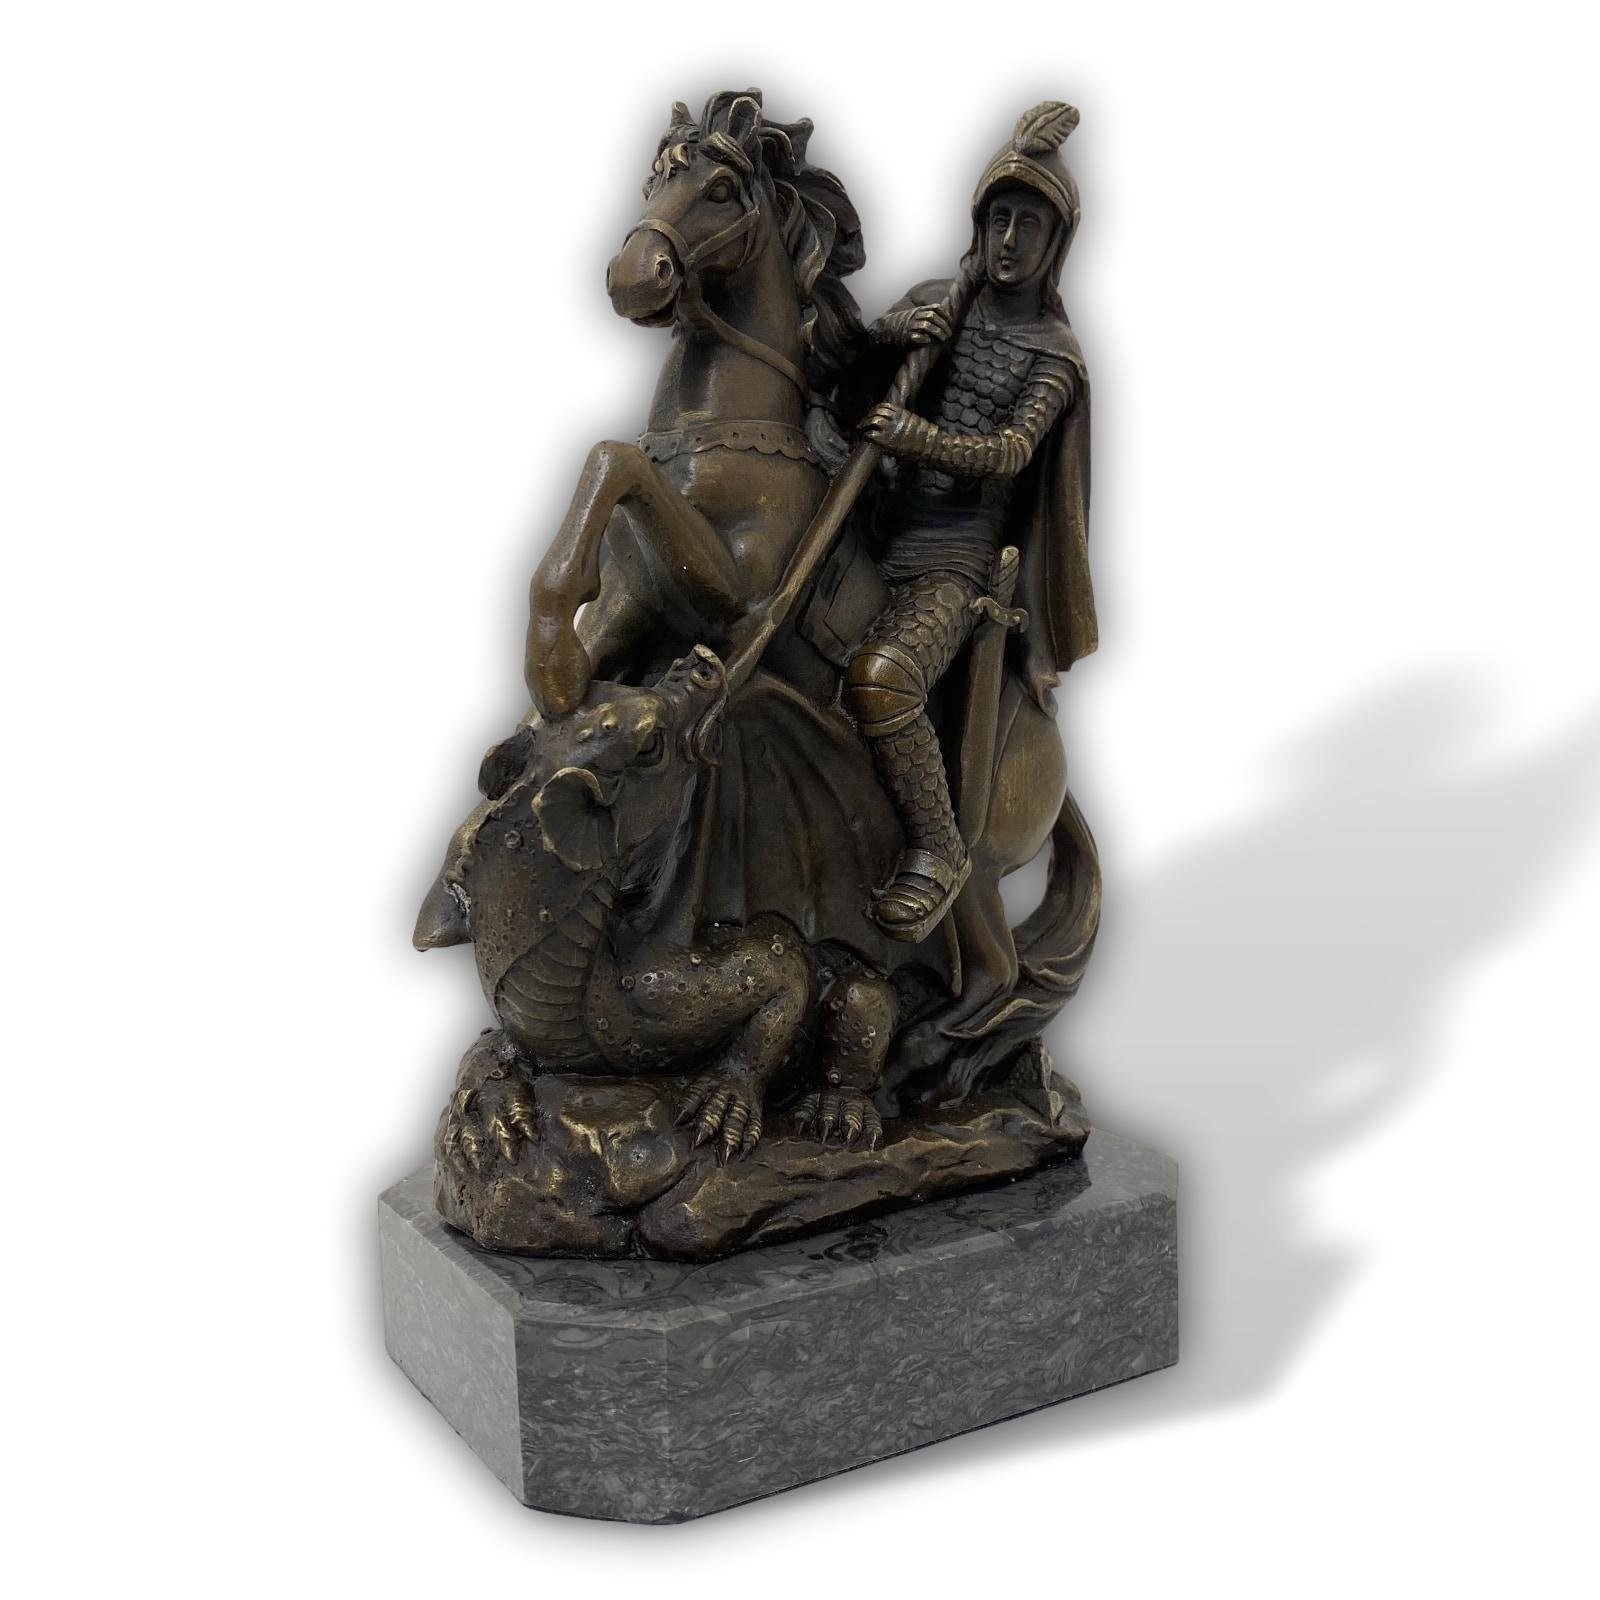 Mythologie Bronze Bron Drachentöter Antik-Stil Aubaho Figur Skulptur St.Georg Skulptur